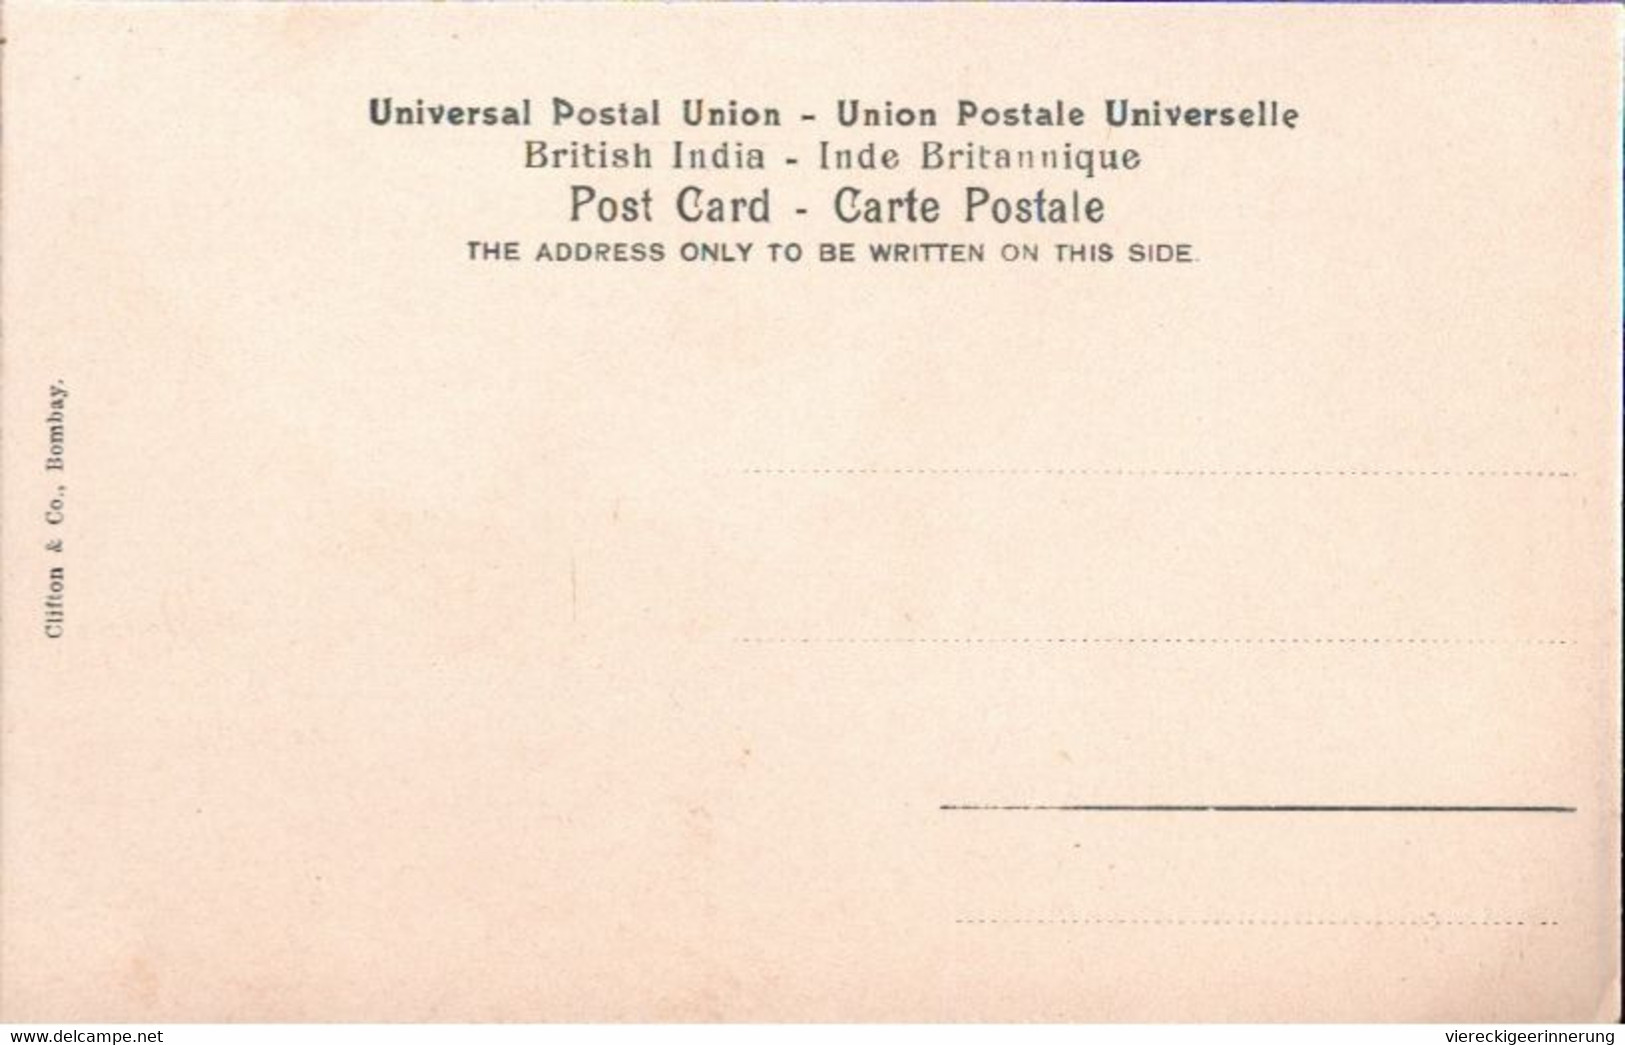 ! Old Postcard, Alte Ansichtskarte Aus Bombay, Indien, India, Impfung Gegen Die Pest, Inoculation Against Plague Medcine - Indien